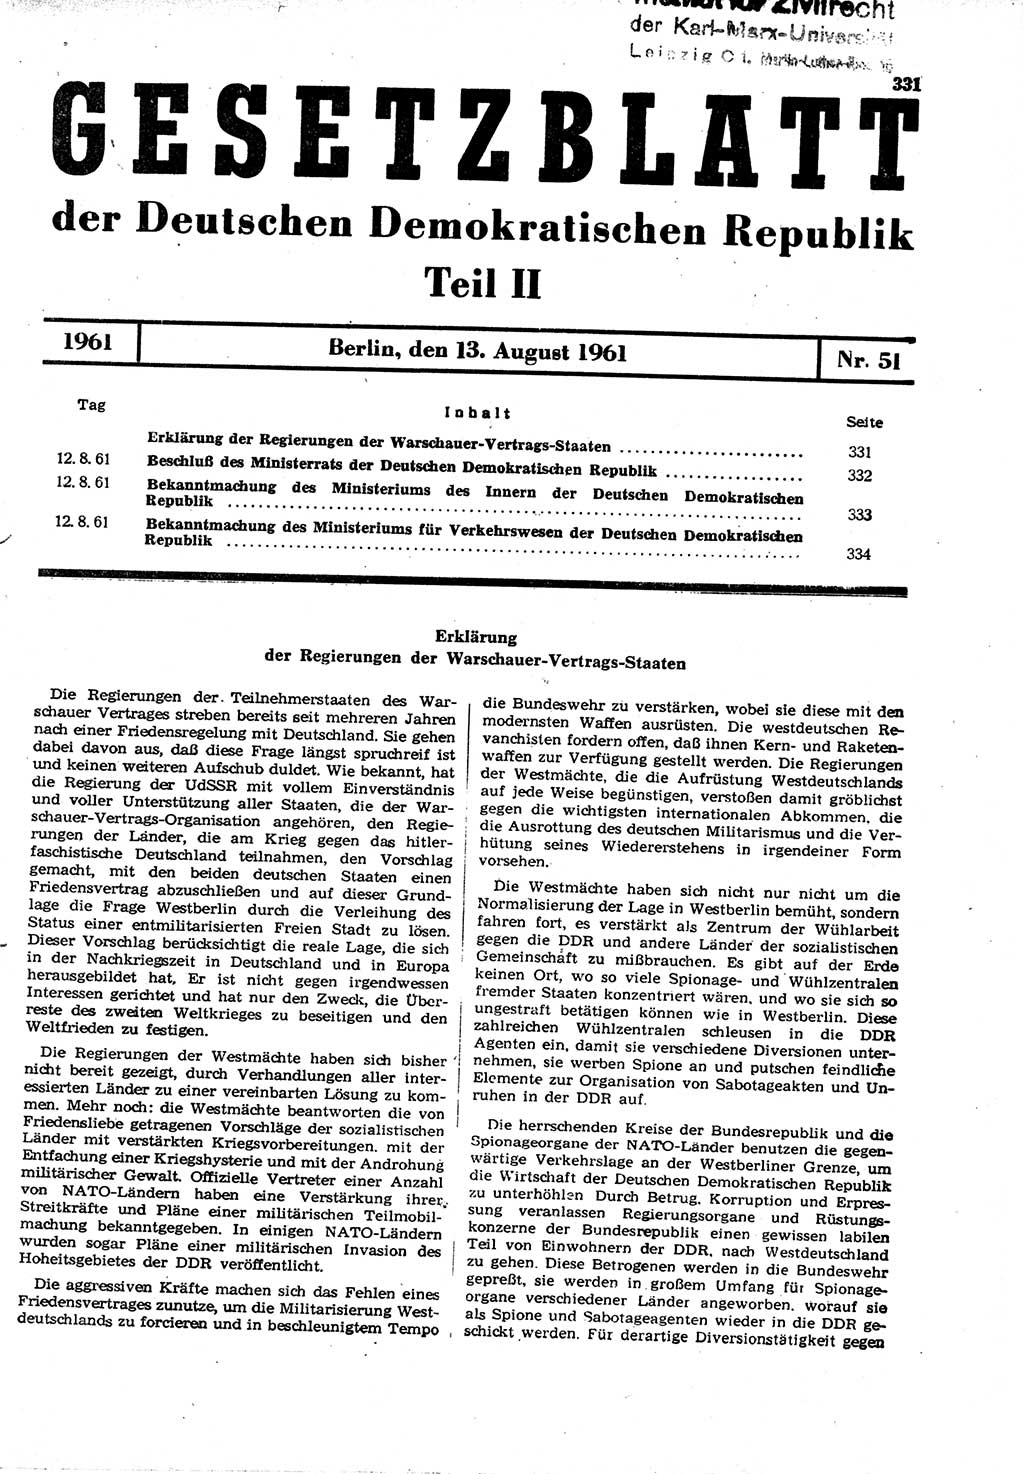 Gesetzblatt (GBl.) der Deutschen Demokratischen Republik (DDR) Teil ⅠⅠ 1961, Seite 331 (GBl. DDR ⅠⅠ 1961, S. 331)